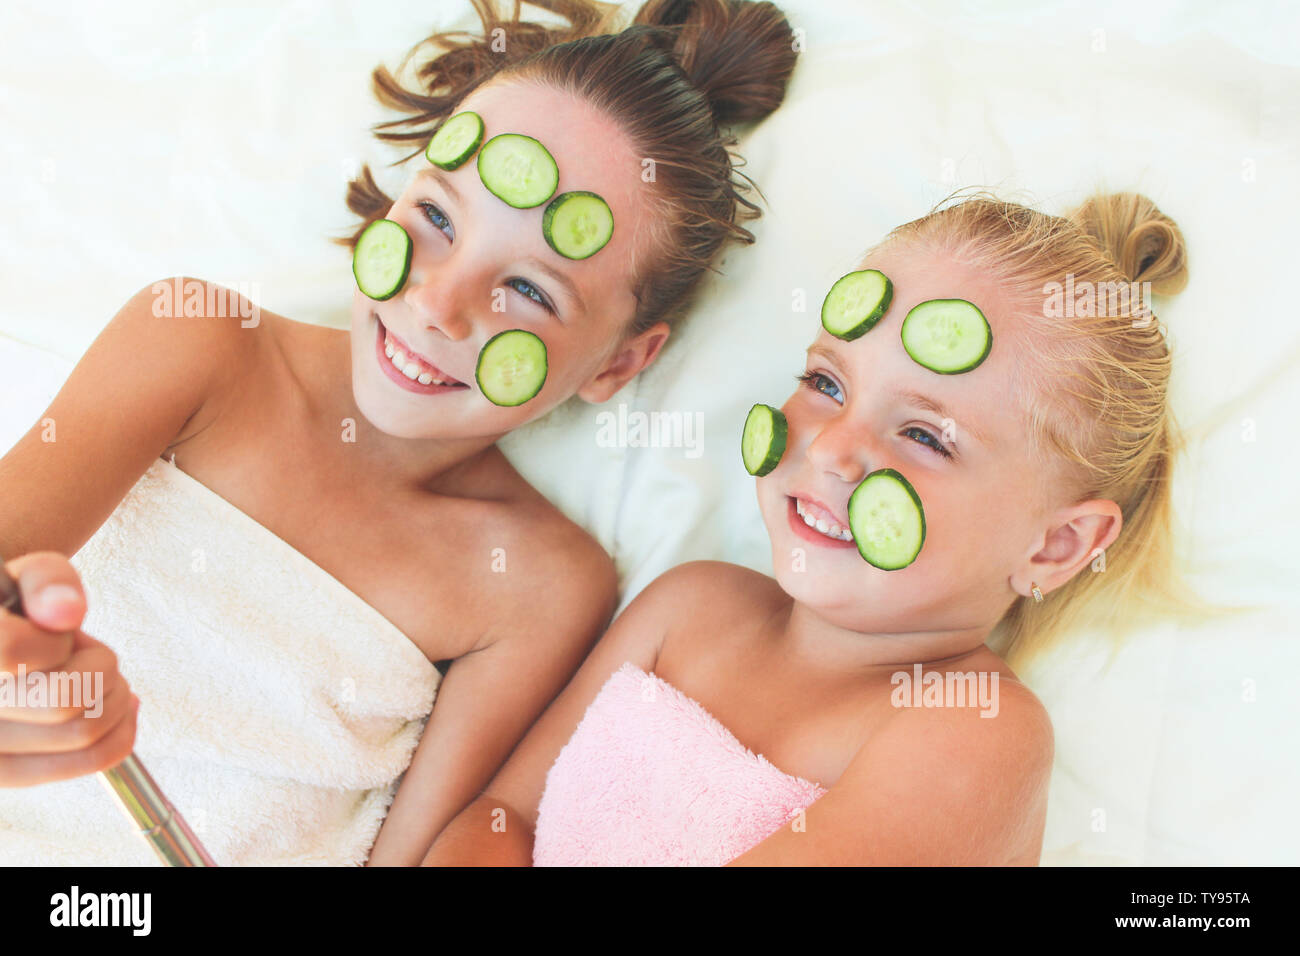 Schöne Mädchen mit Gesichtsmaske der Gurke. Kinder Bilder von ihr selbst  getroffen Stockfotografie - Alamy